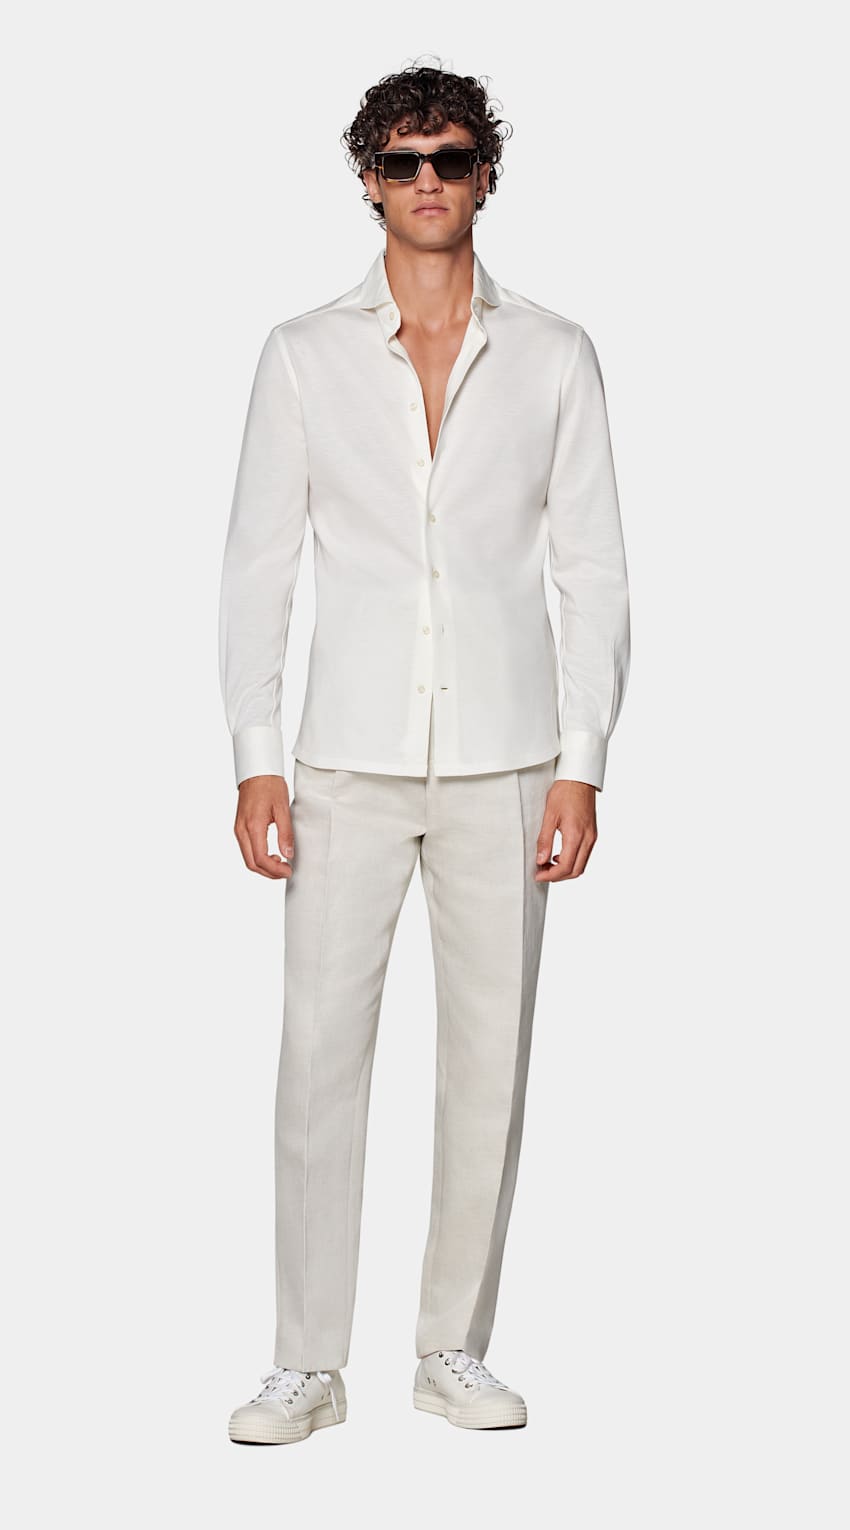 SUITSUPPLY Ägyptische Baumwolle Strickwear von Tessilmaglia, Italien Strick-Hemd off-white Extra Slim Fit